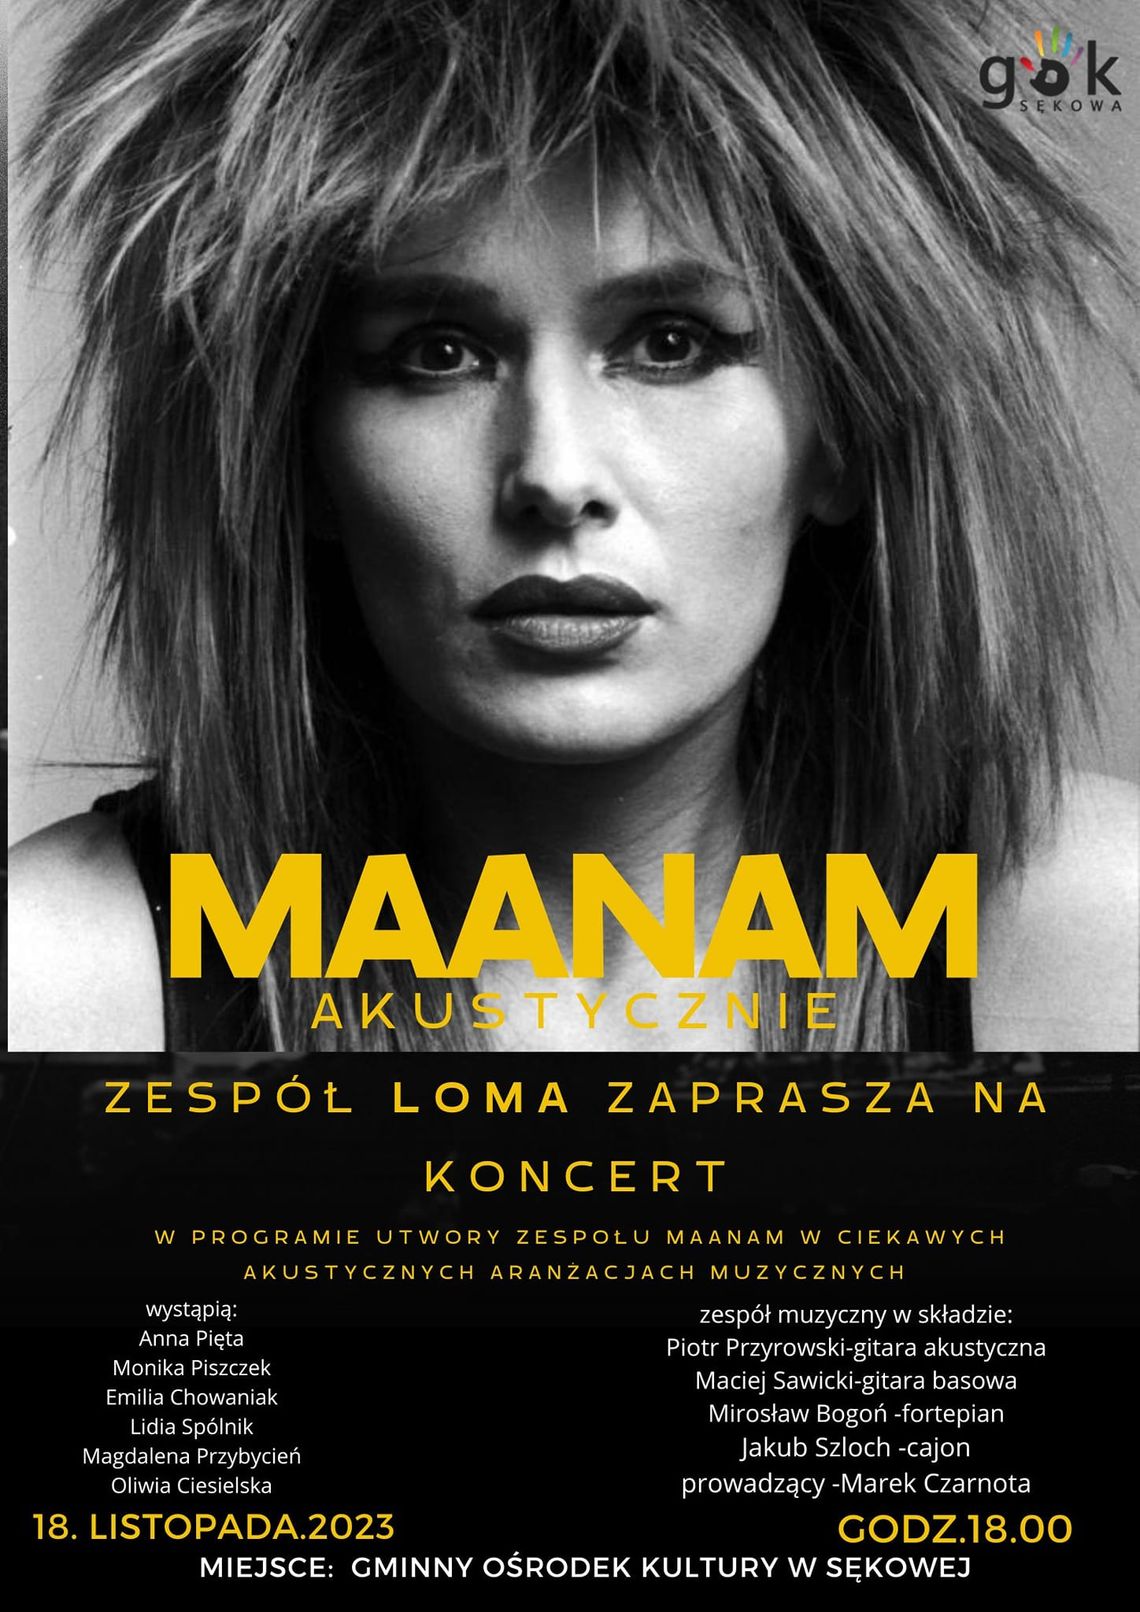 Maanam akustycznie - koncert zespołu „Loma” | halogorlice.info